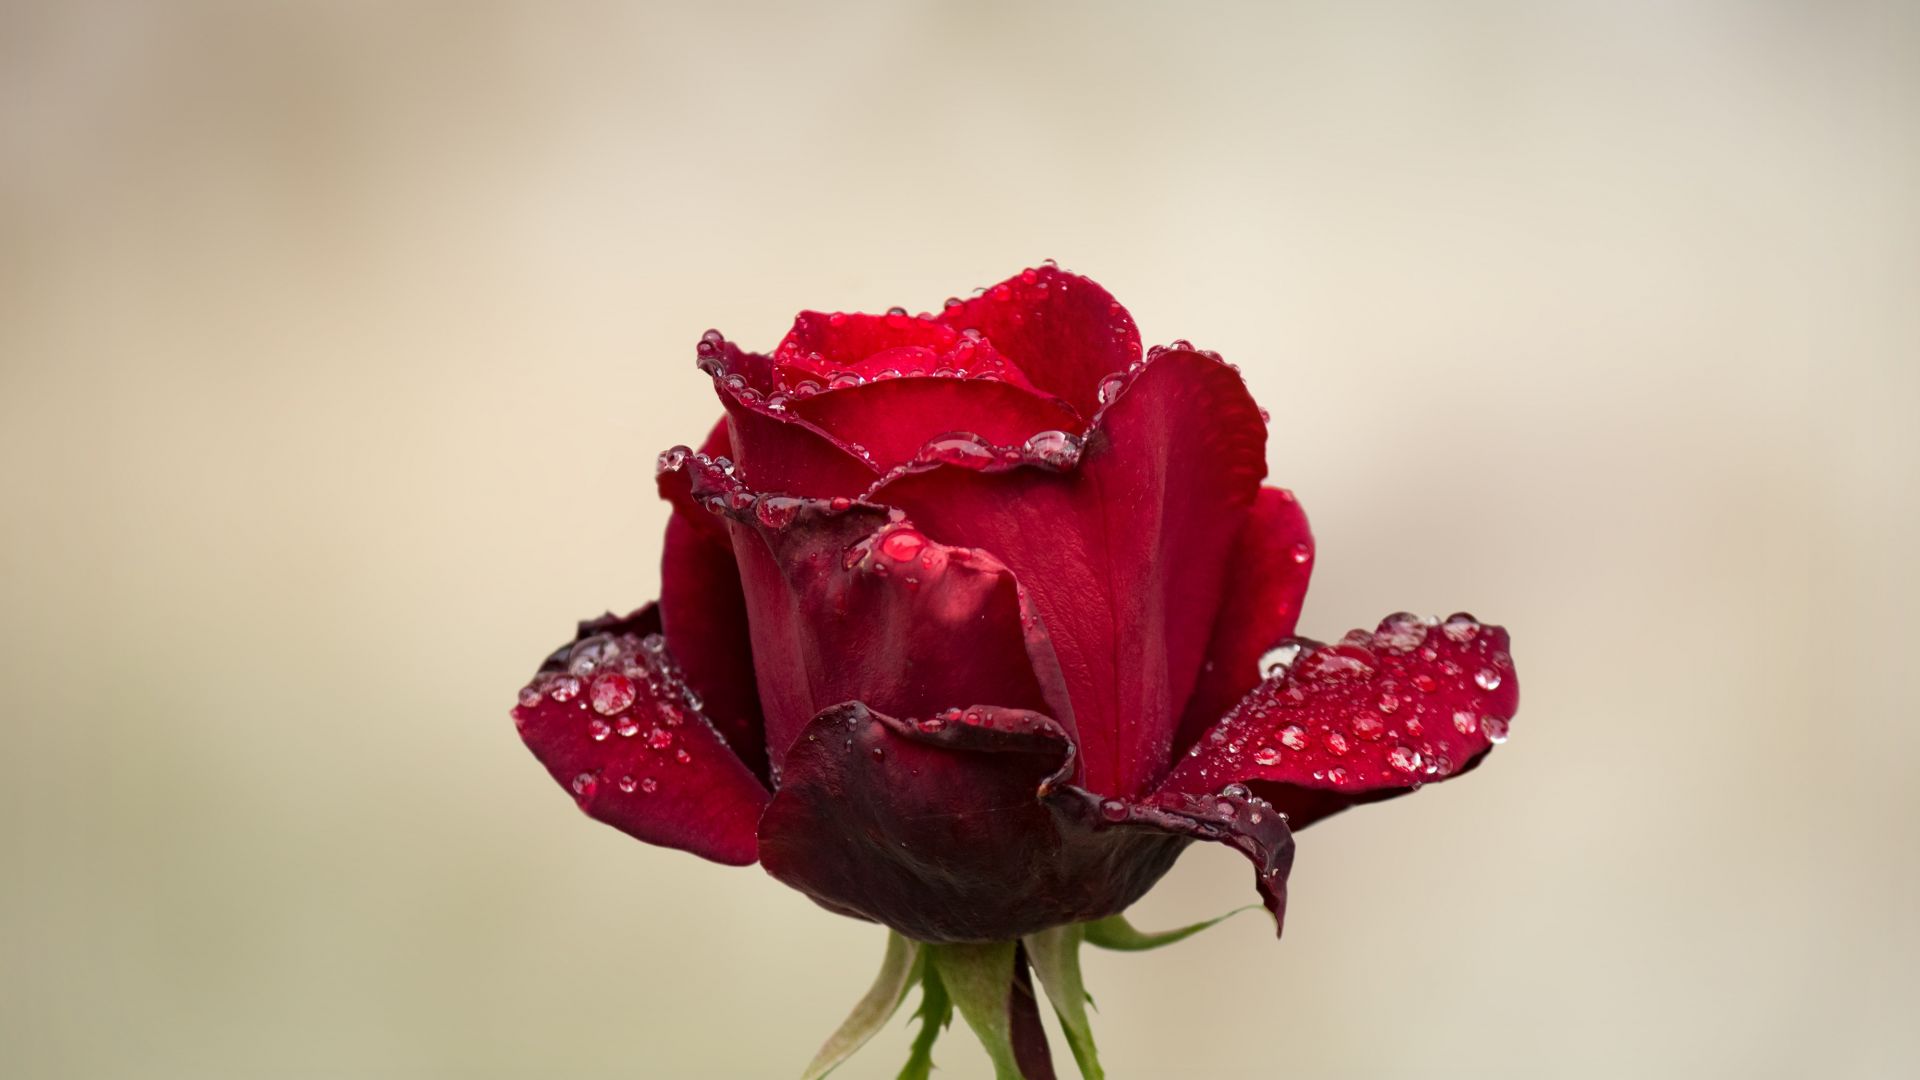 Wallpaper Rose, red bud, water drops, 4k